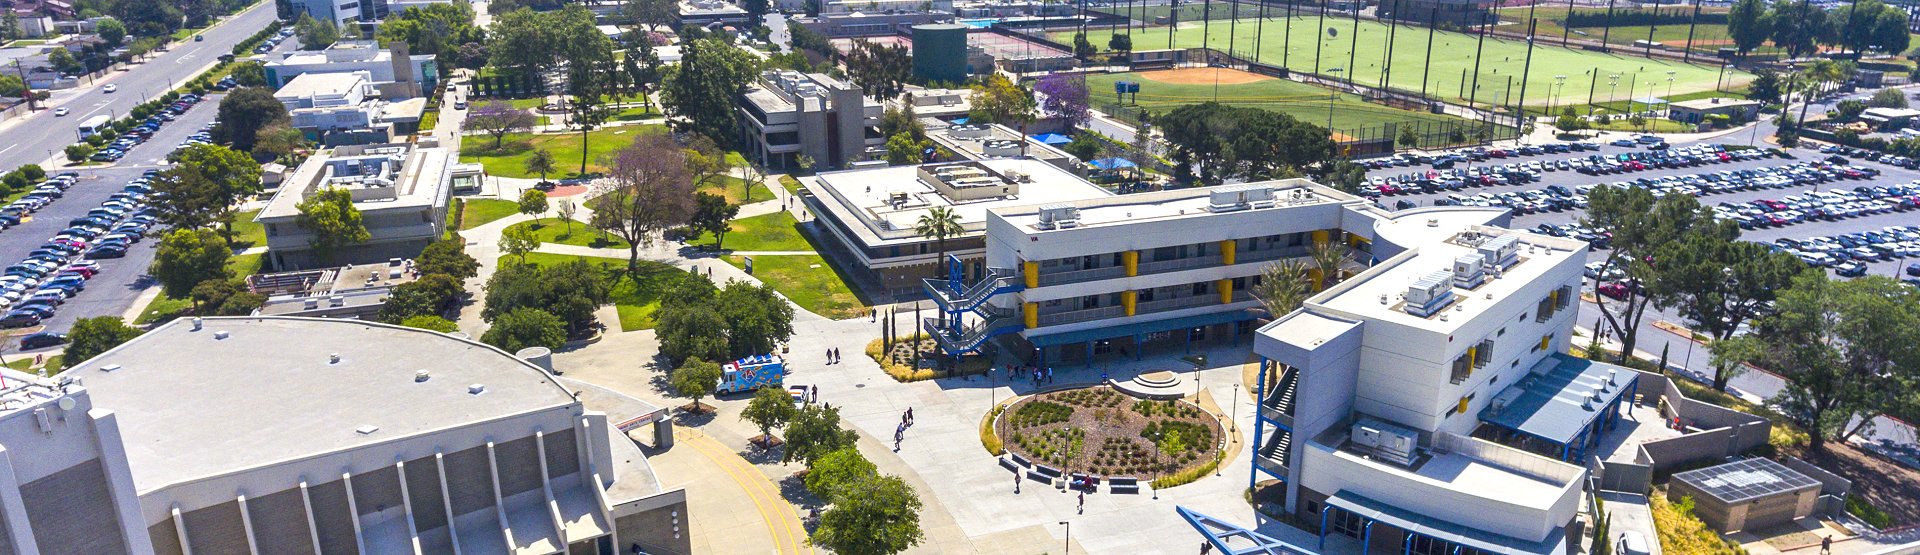 aerial view of the Citrus College campus